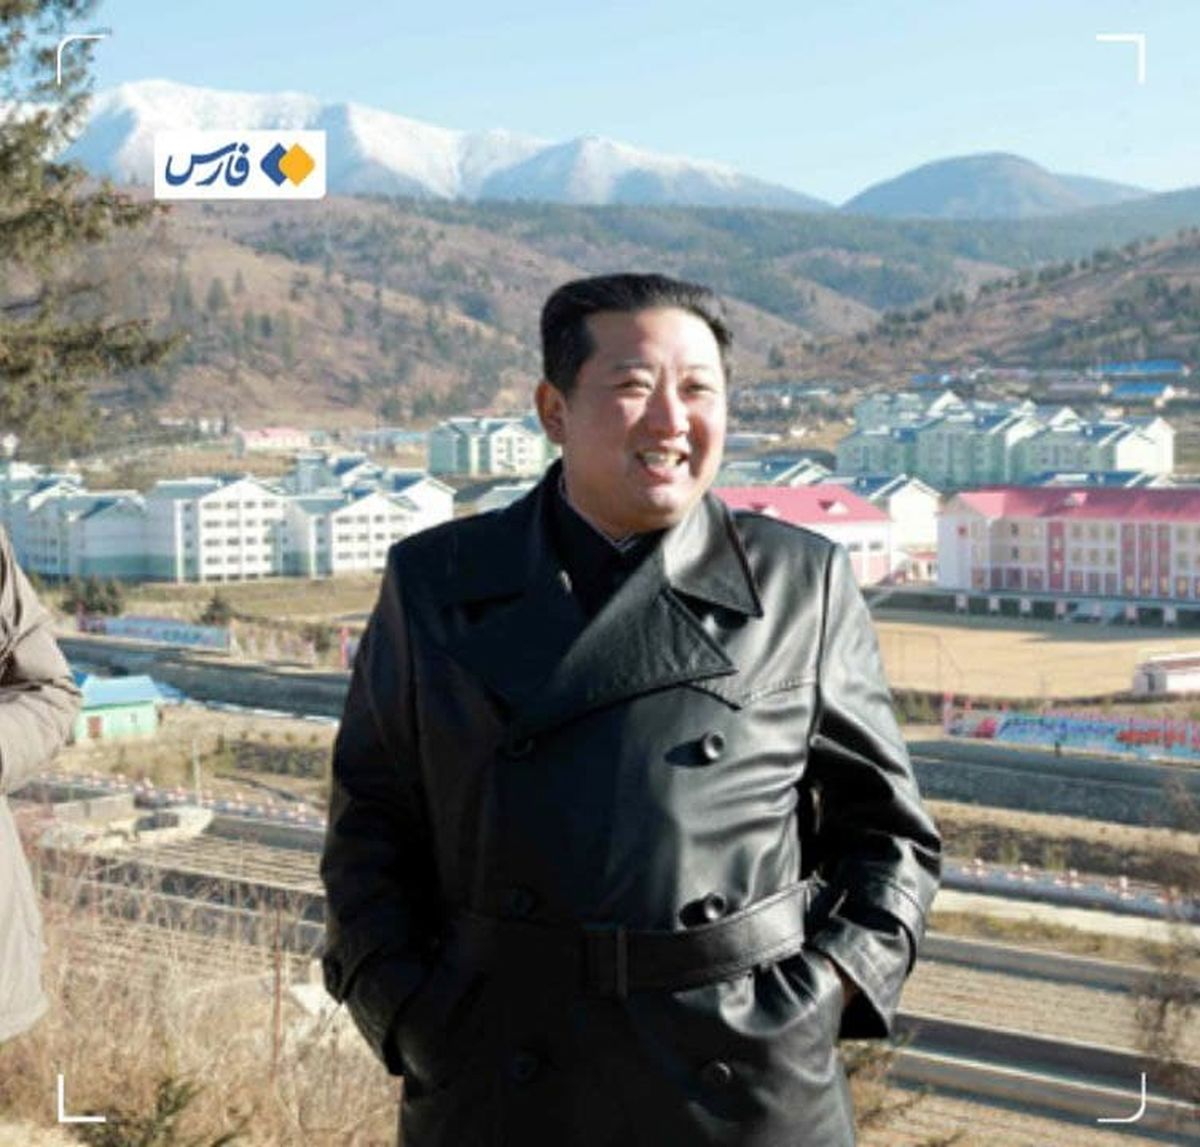 تیپ متفاوت رهبر کره شمالی پس از غیبت طولانی+عکس